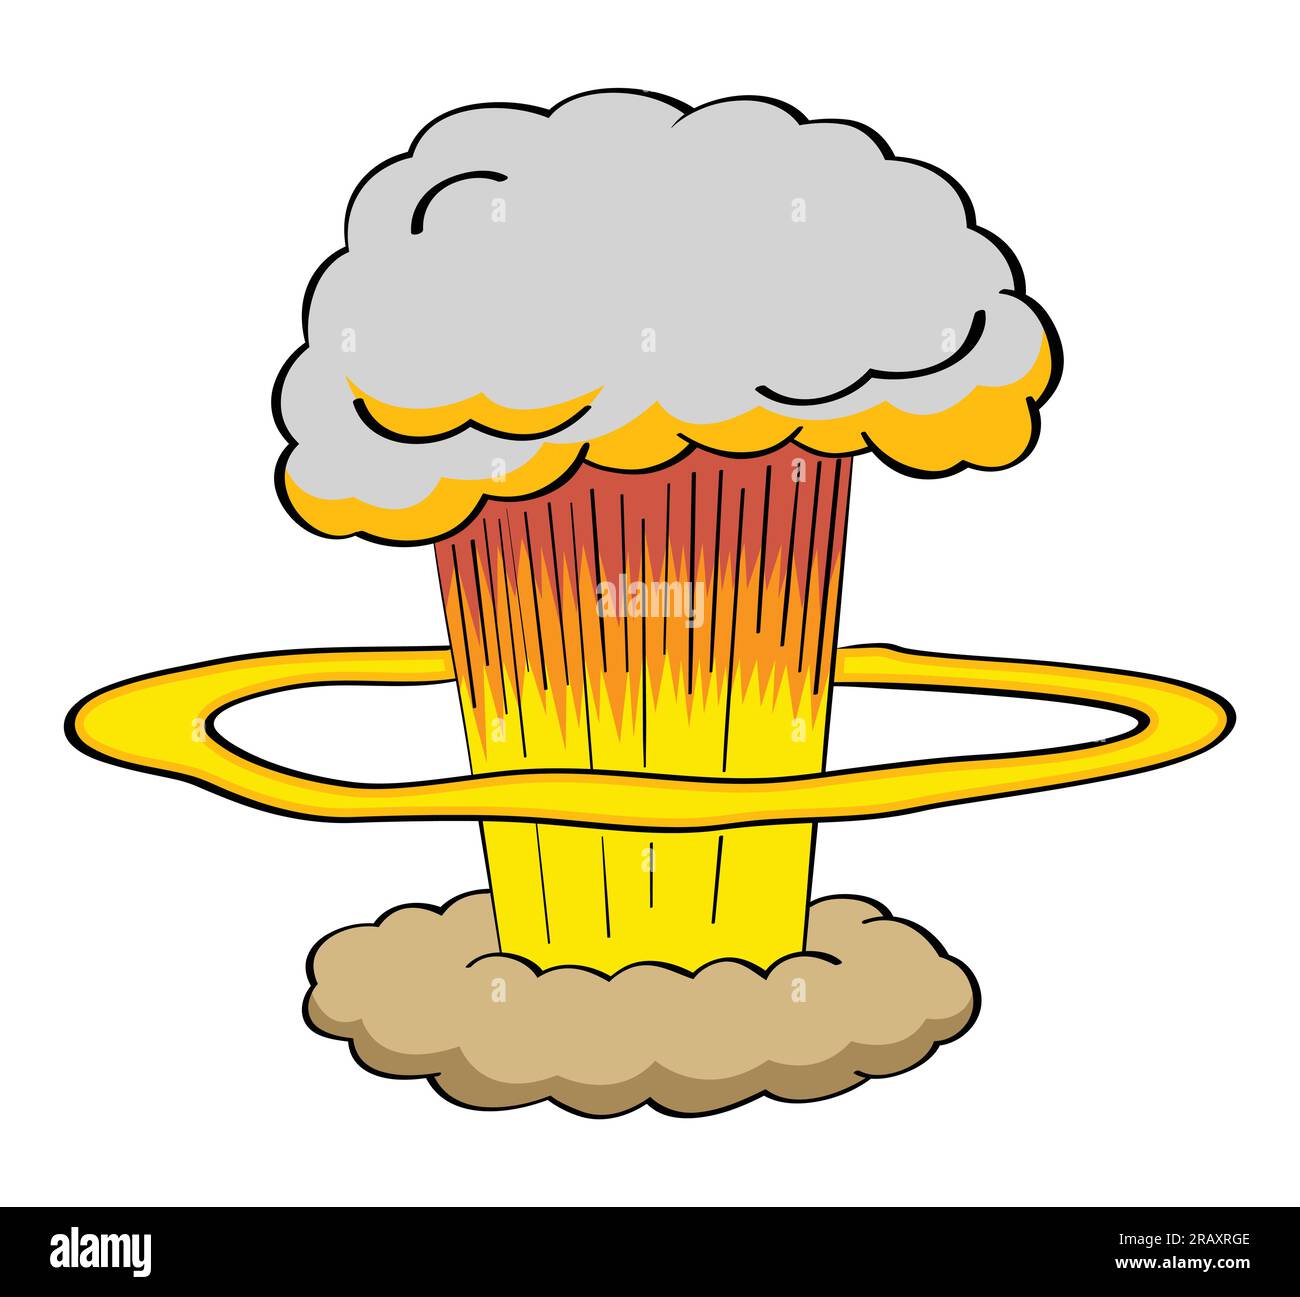 Atomic bomb explosion in cartoon style illustration Stock Vector